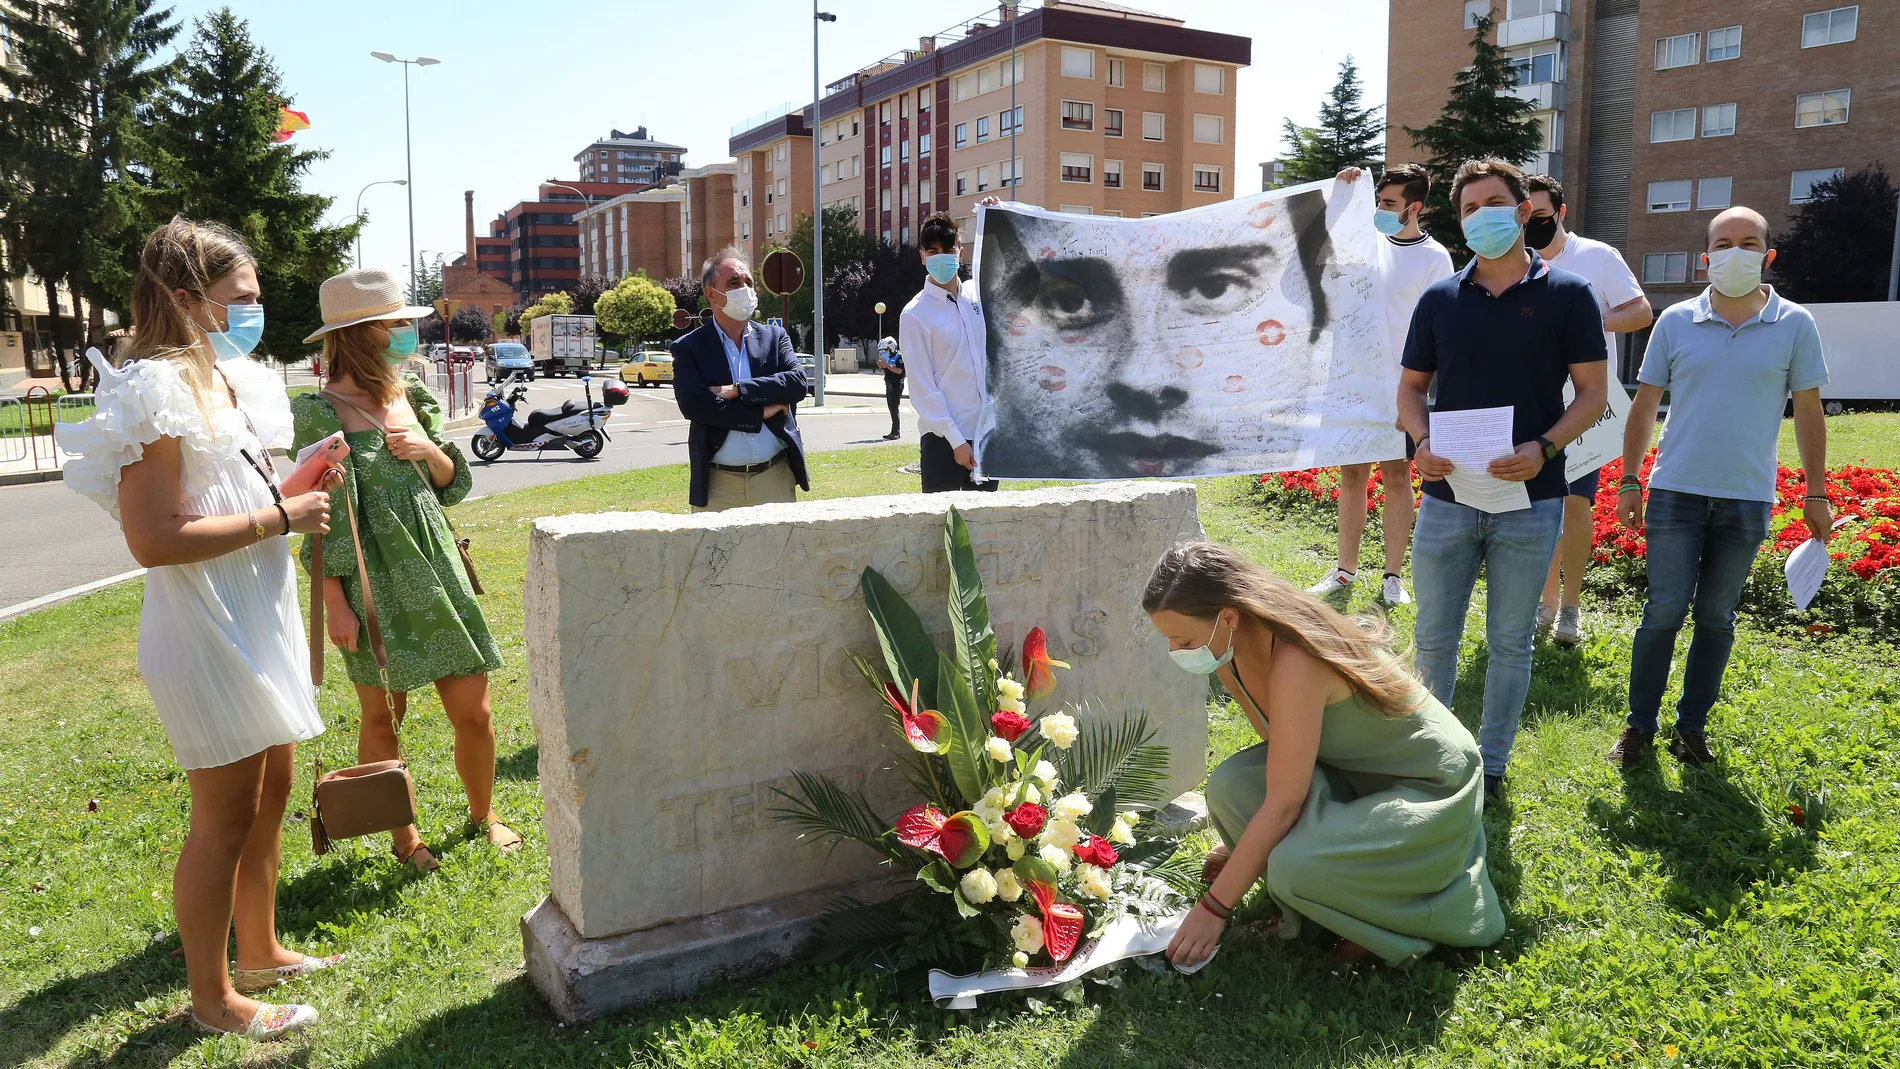 Nuevas Generaciones del Partido Popular de Palencia recuerda los 23 años del asesinato de Miguel Ángel Blanco a manos de la banda terrorista ETA en la glorieta'Victimas del Terrorismo' en Palencia